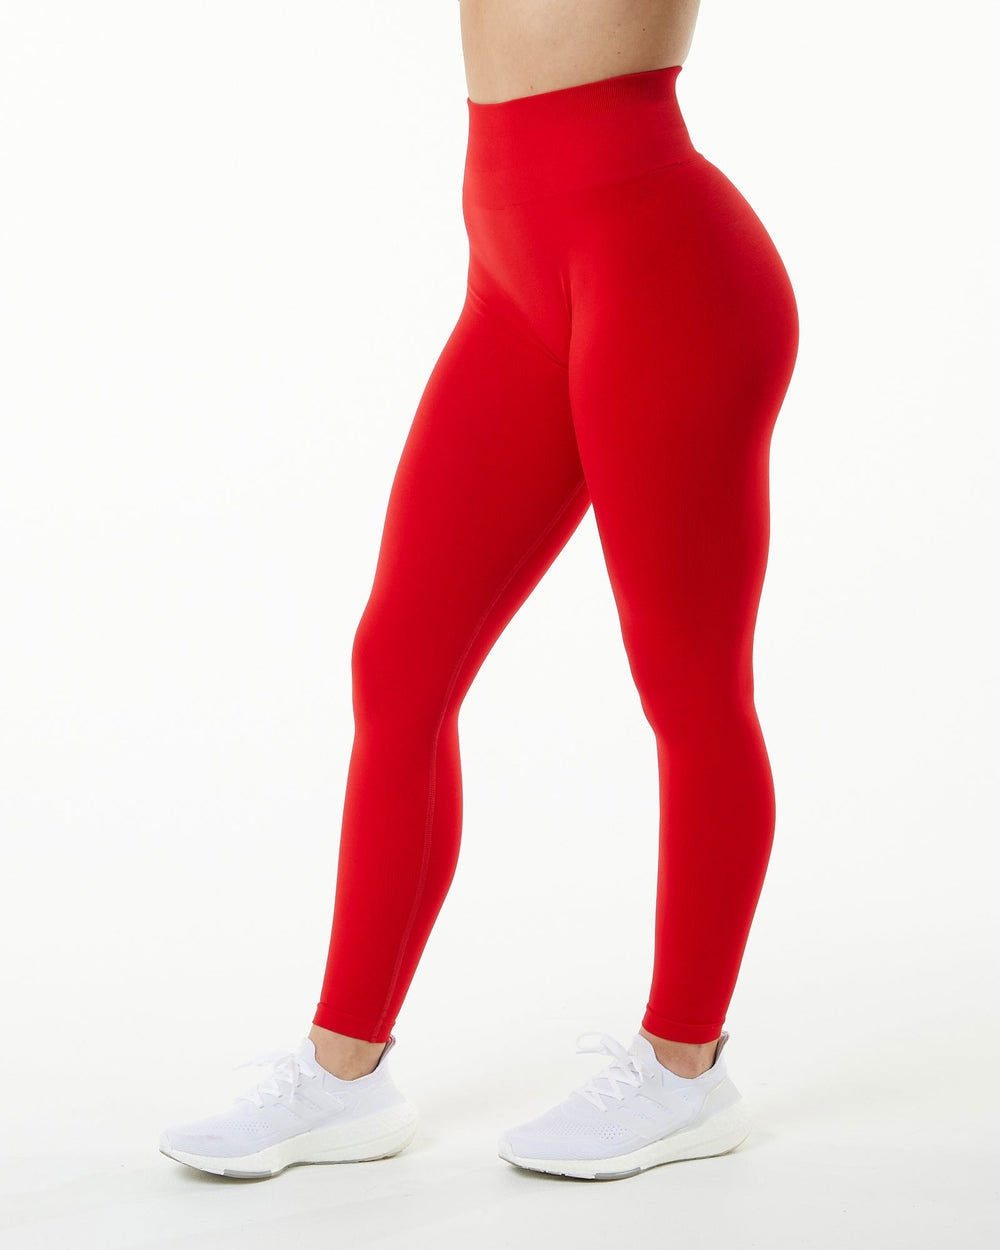 Ruffle Yoga Pants Activewear Truetights Big Red S 